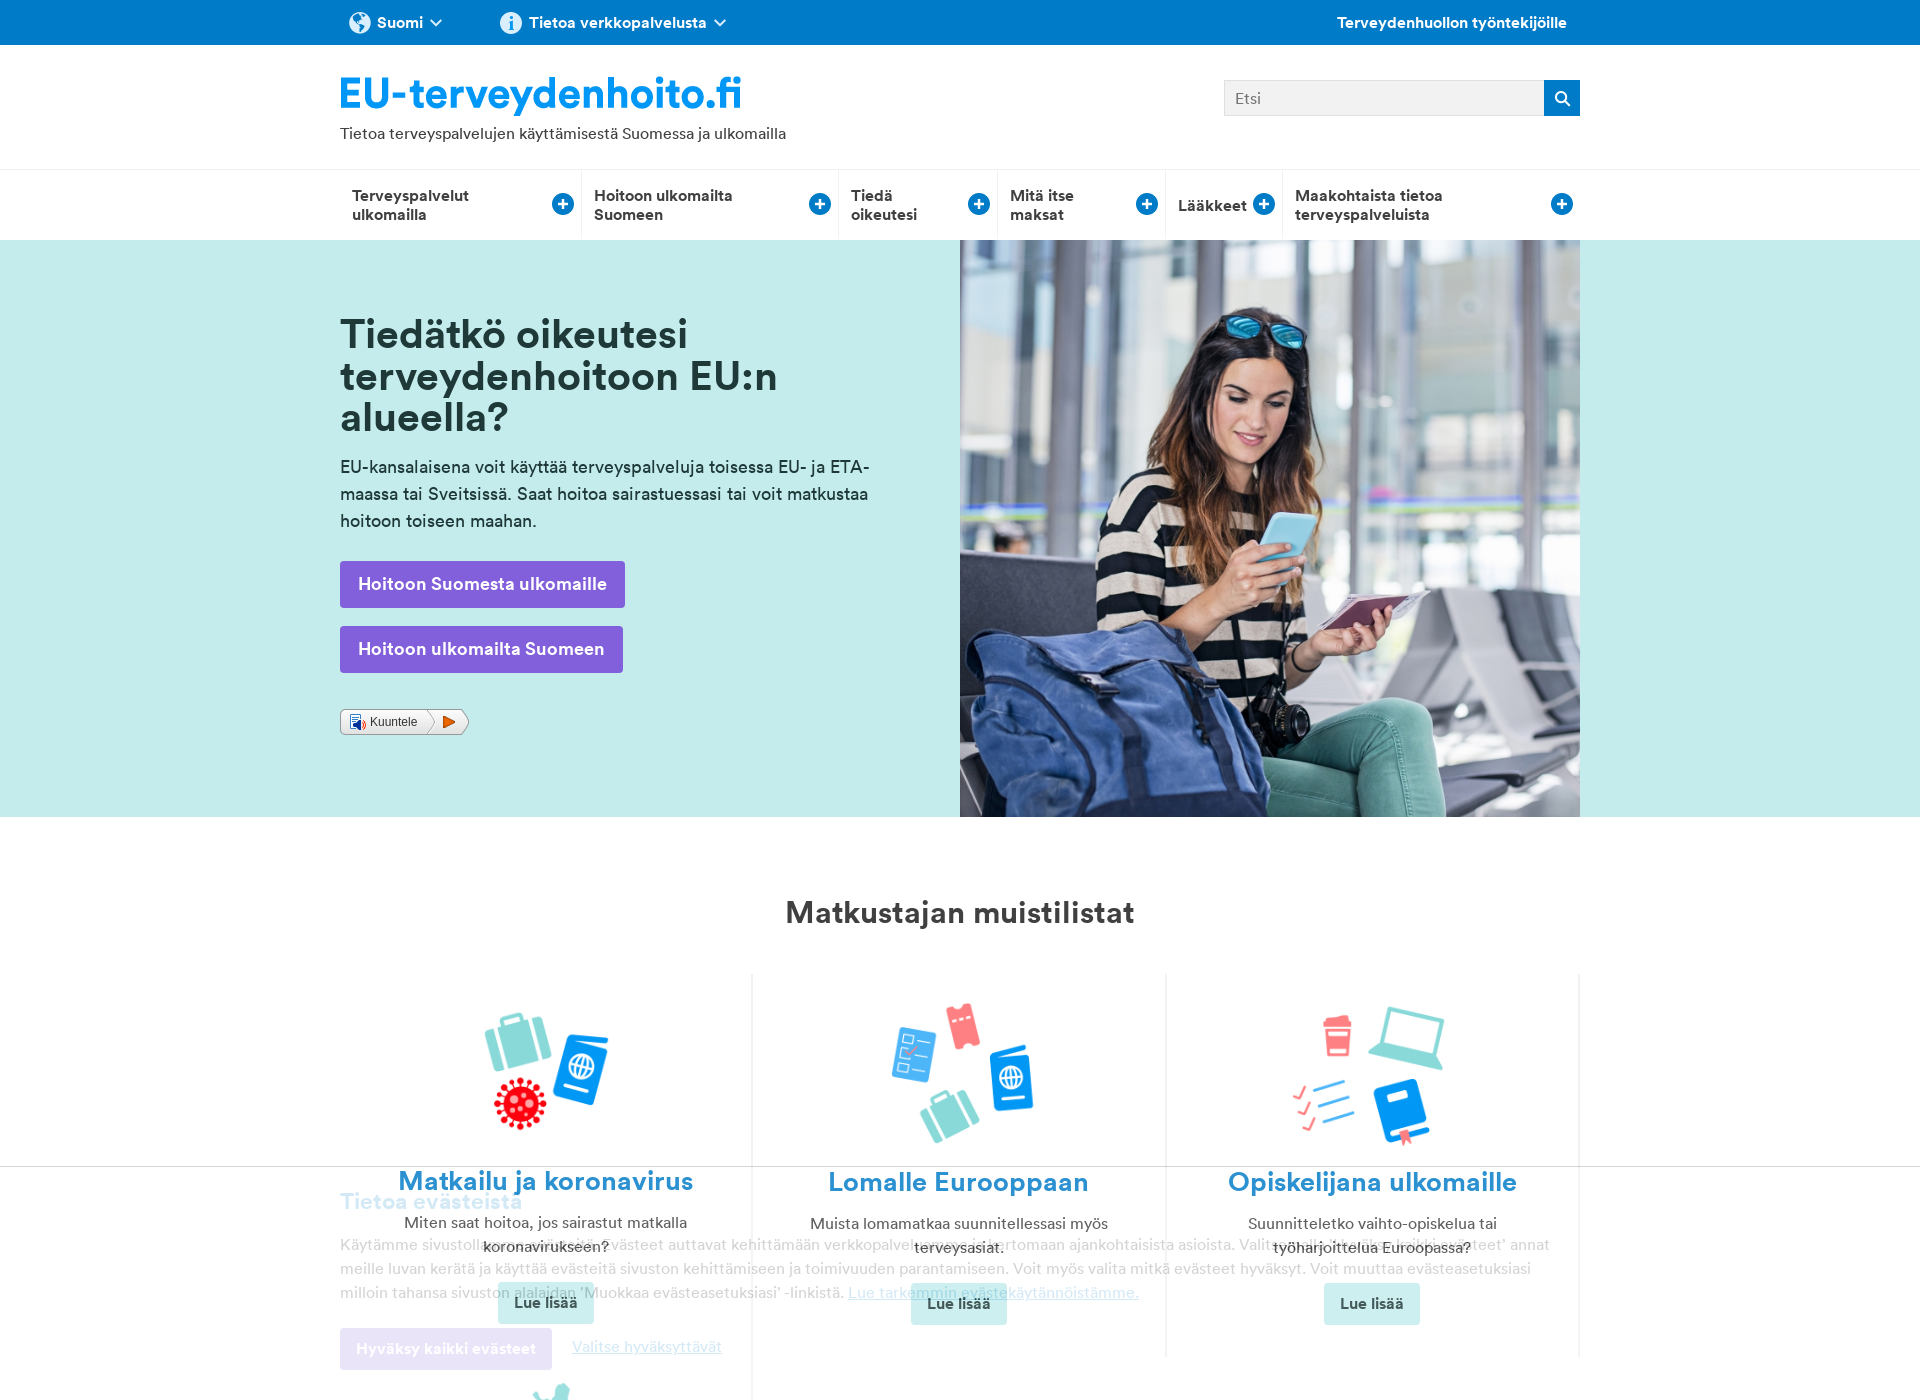 Skärmdump för hoitooneurooppaan.fi